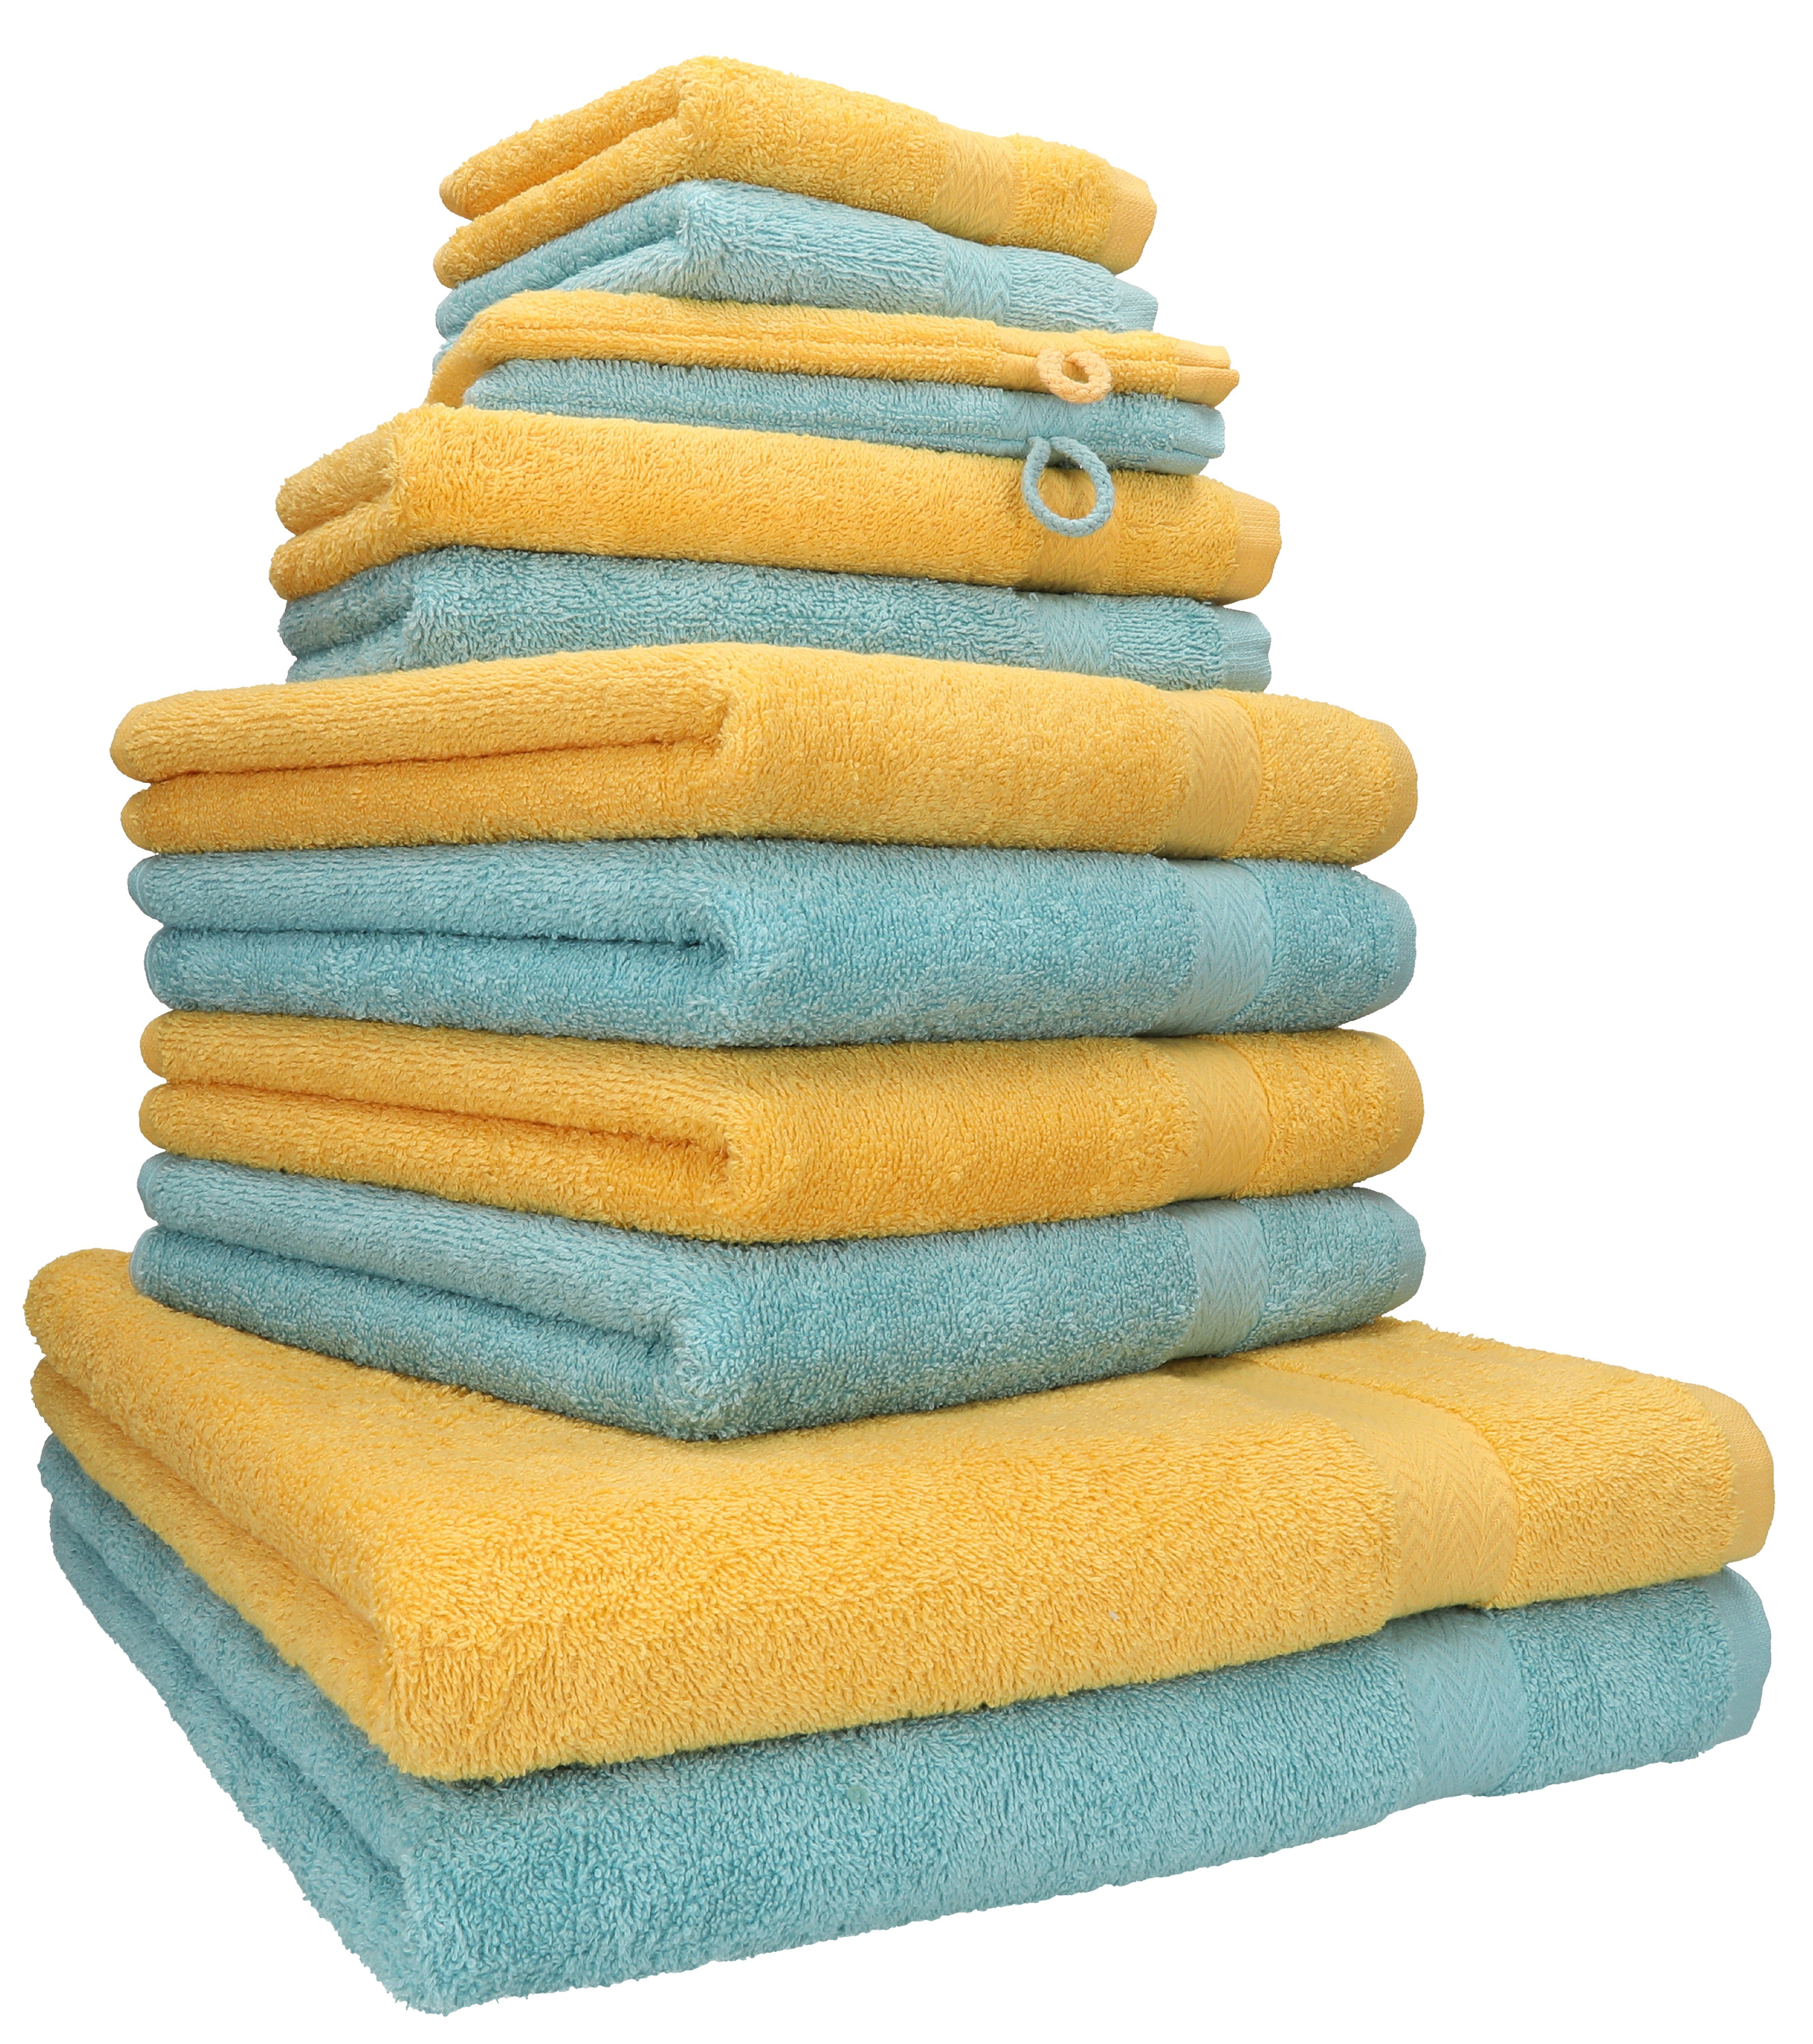 Betz Handtuch Set 12-tlg. Handtuch Set Premium Farbe honiggelb/Ocean, 100% Baumwolle, (12-tlg) | Handtuch-Sets